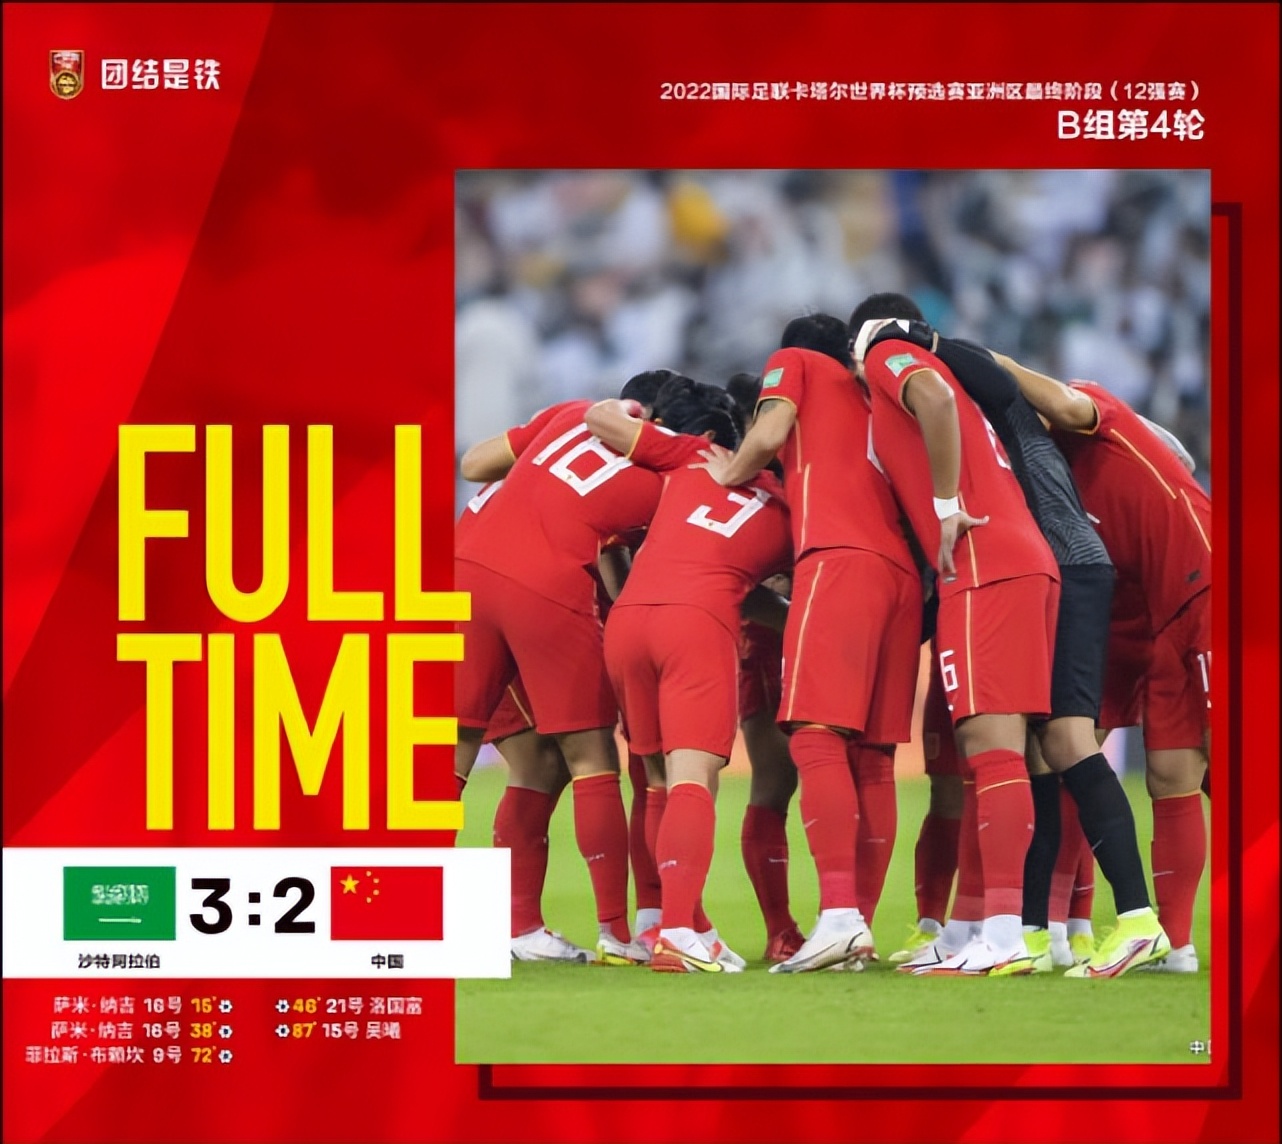 22:55,cctv5直播世界杯:中国vs沙特,国足能否赢得预选赛第二胜